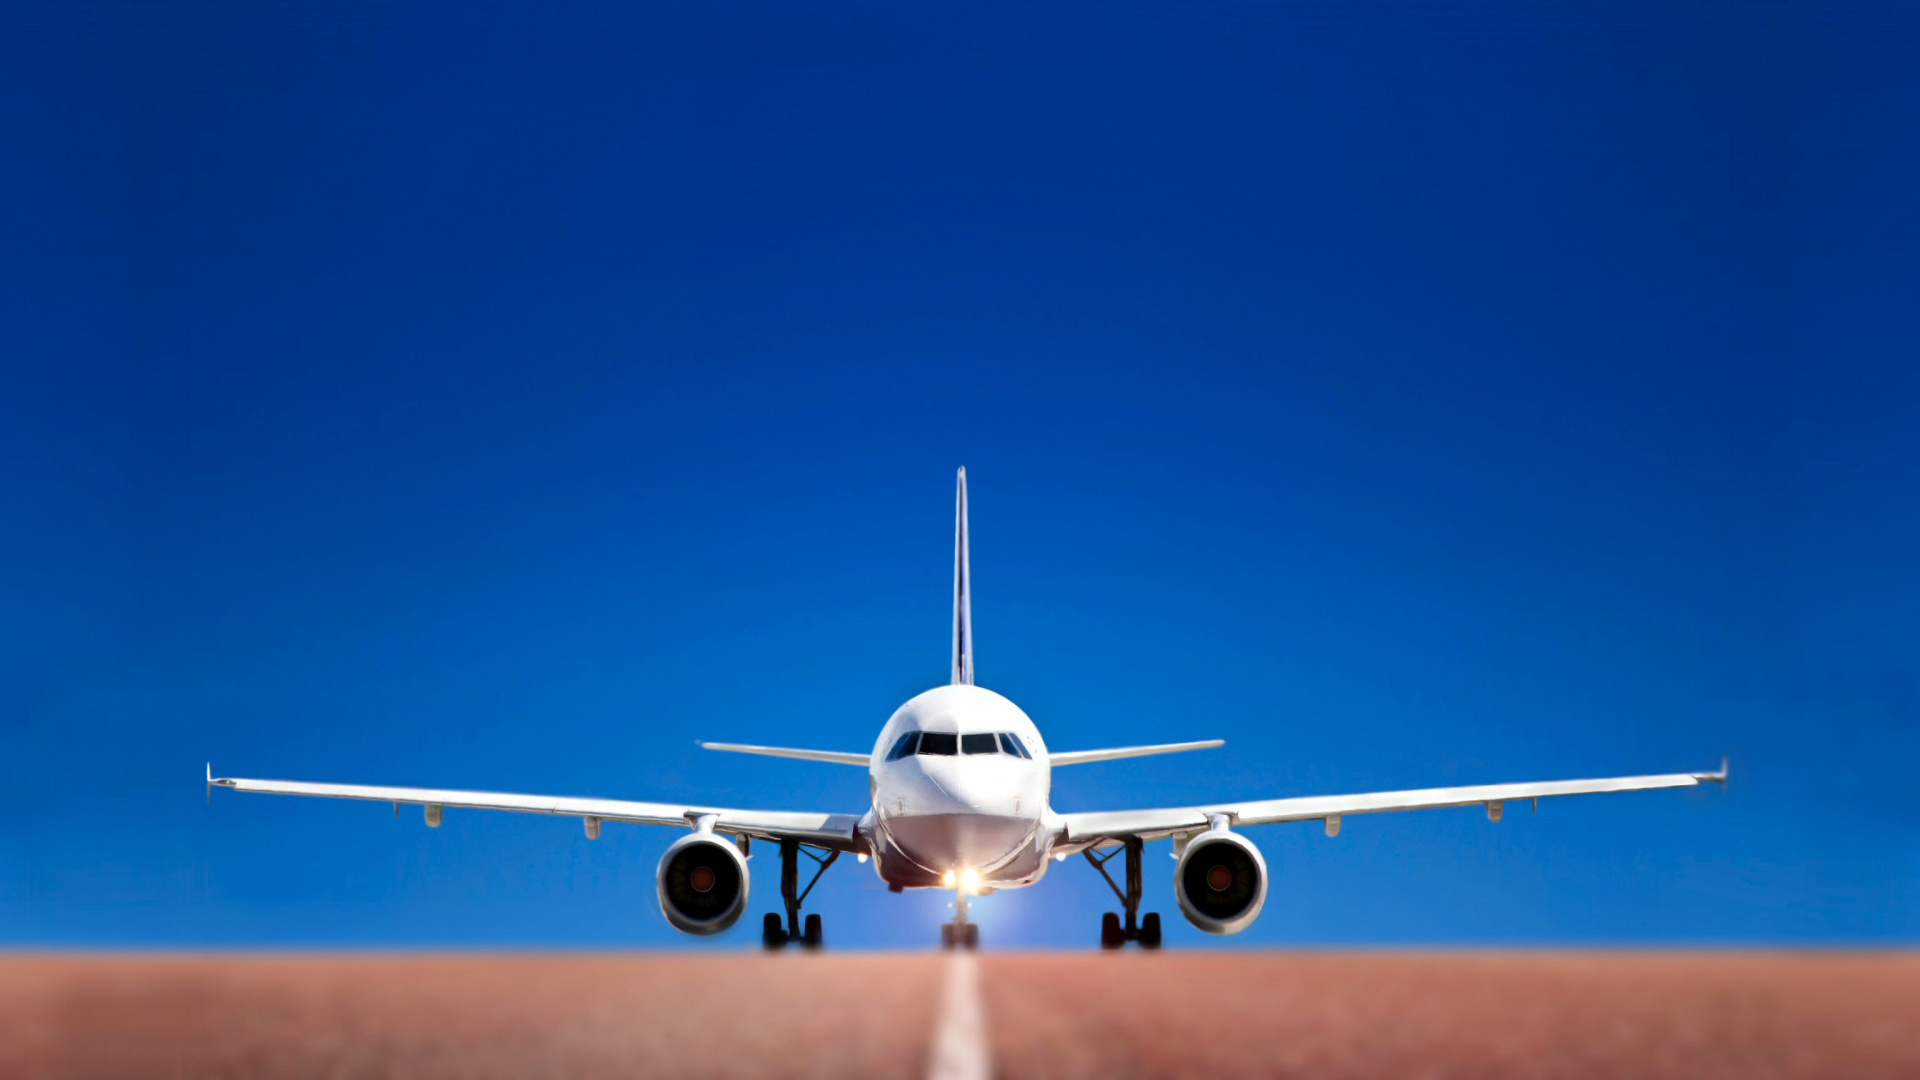 航空公司, 空中旅行, 航空, 客机, 航空航天工程 壁纸 1920x1080 允许